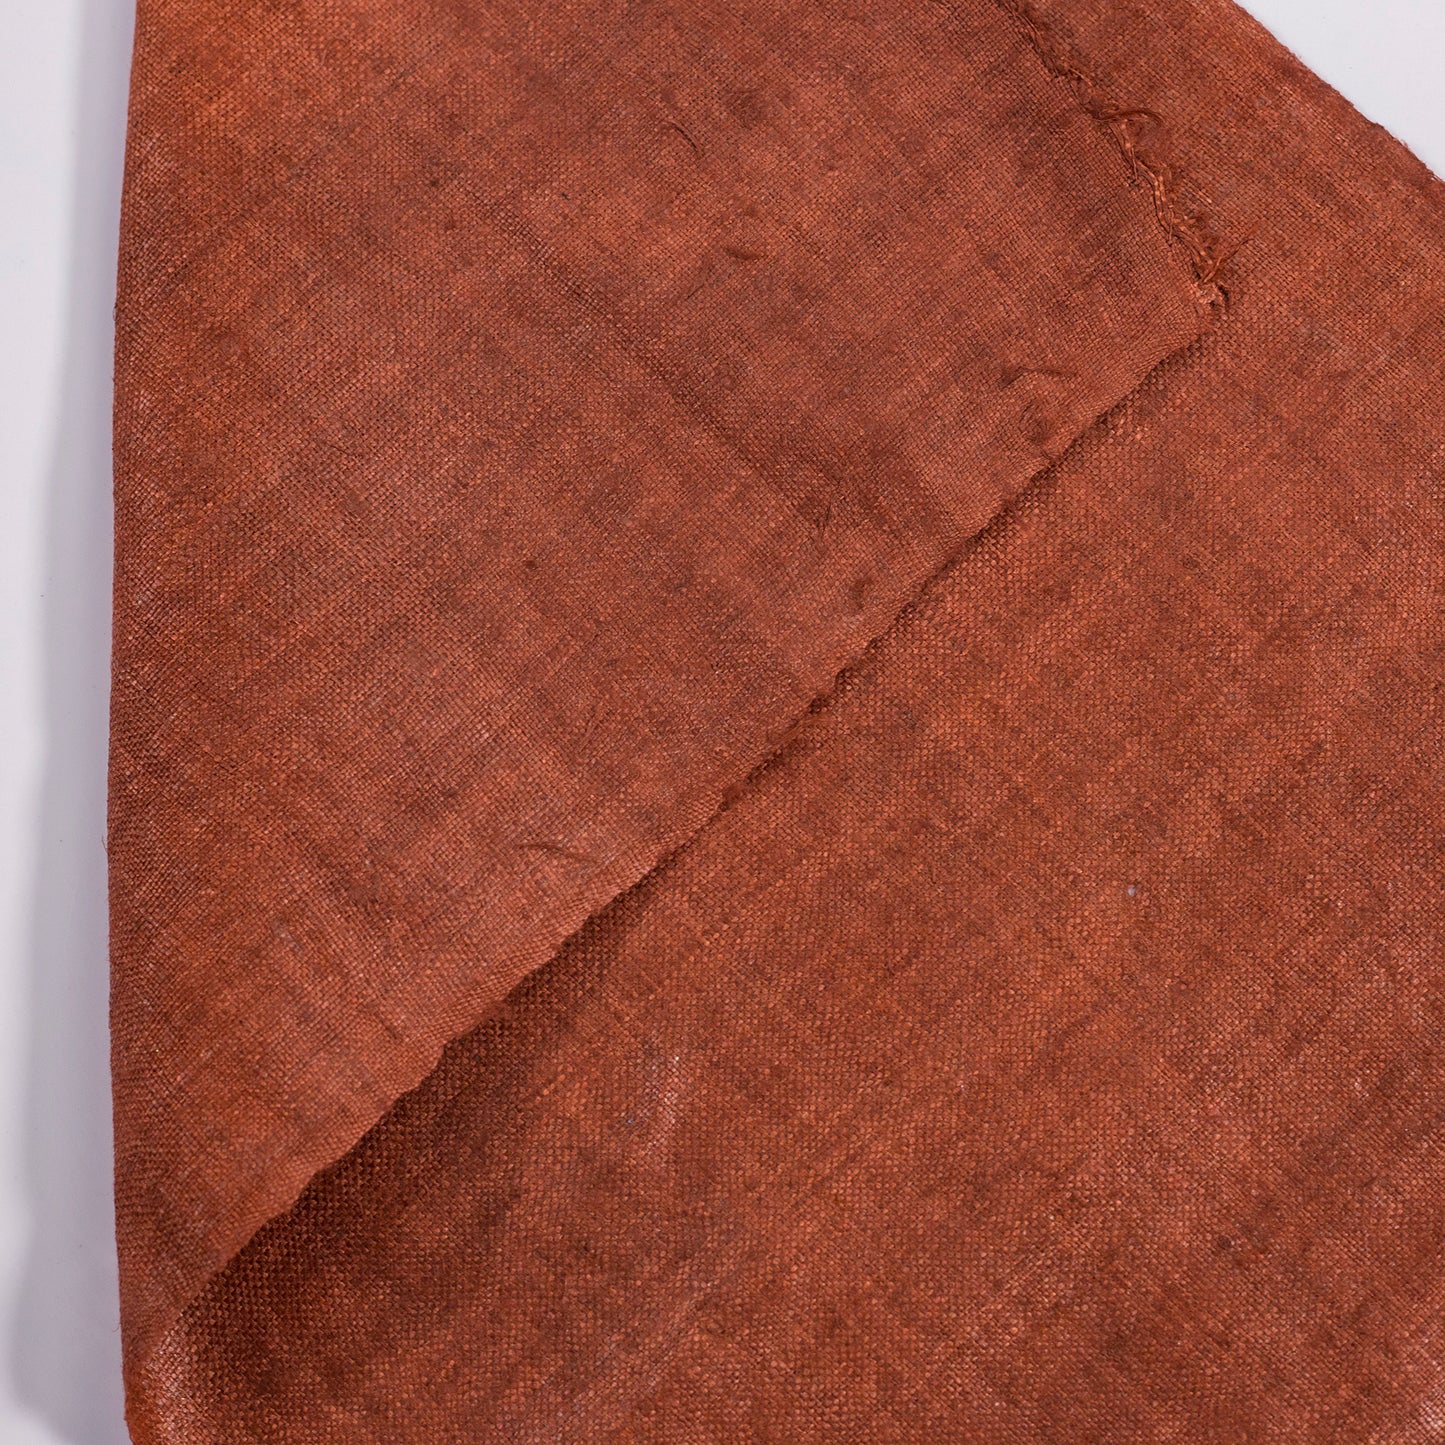 Raw hemp fabric, natural color in BURNT BAGEL BROWN